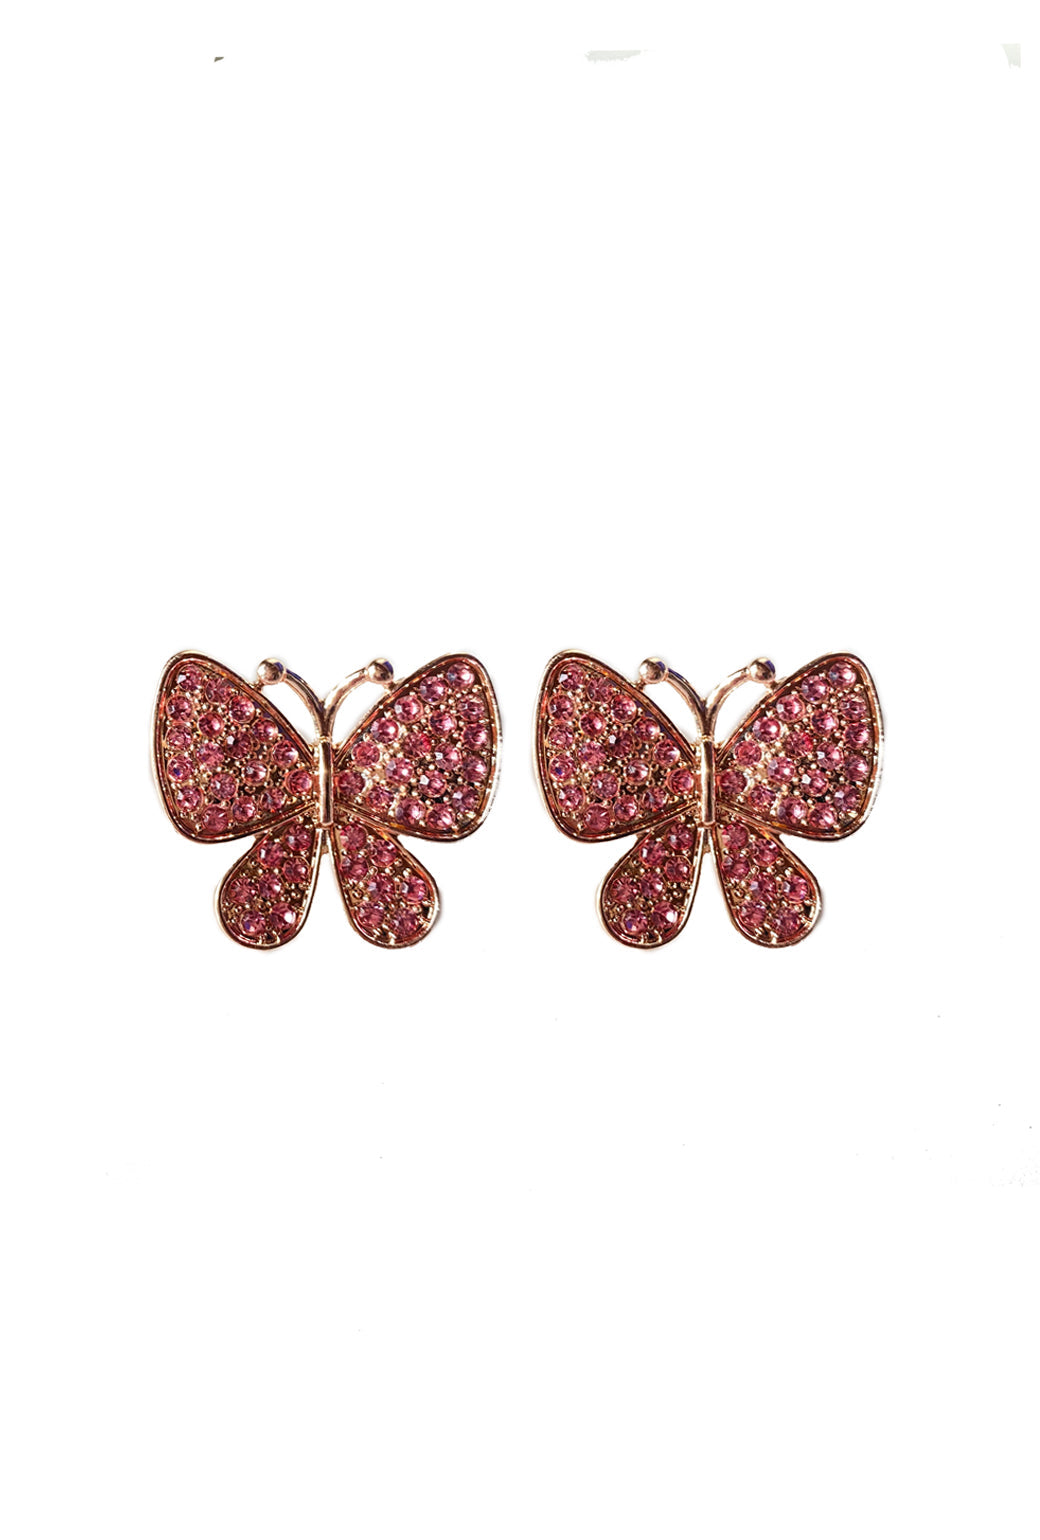 Rhinestone Butterflies - Pink - Final Sale